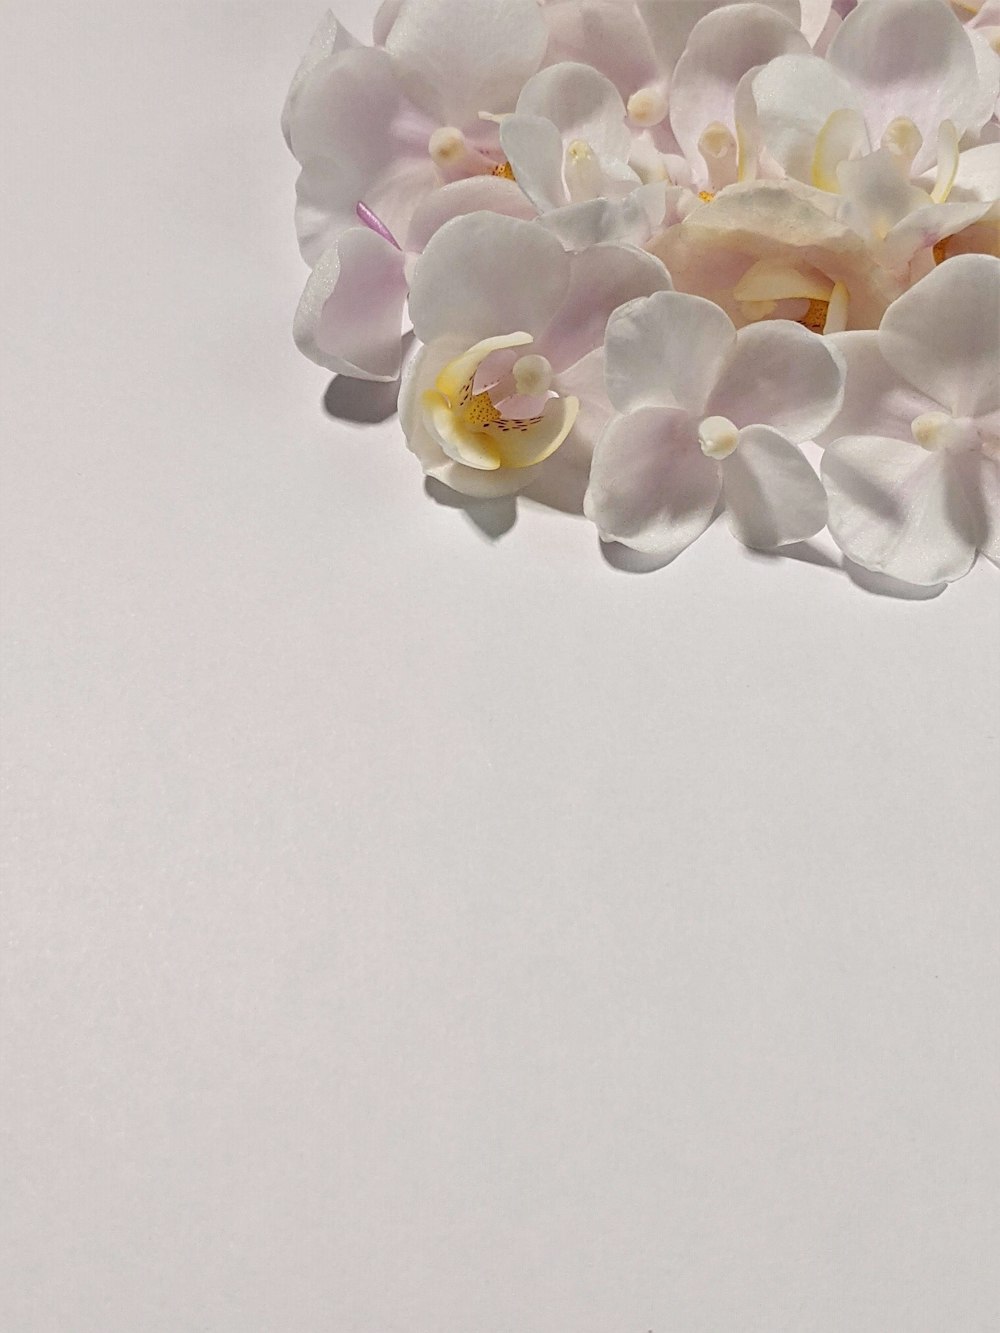 하얀 테이블에 흰 꽃